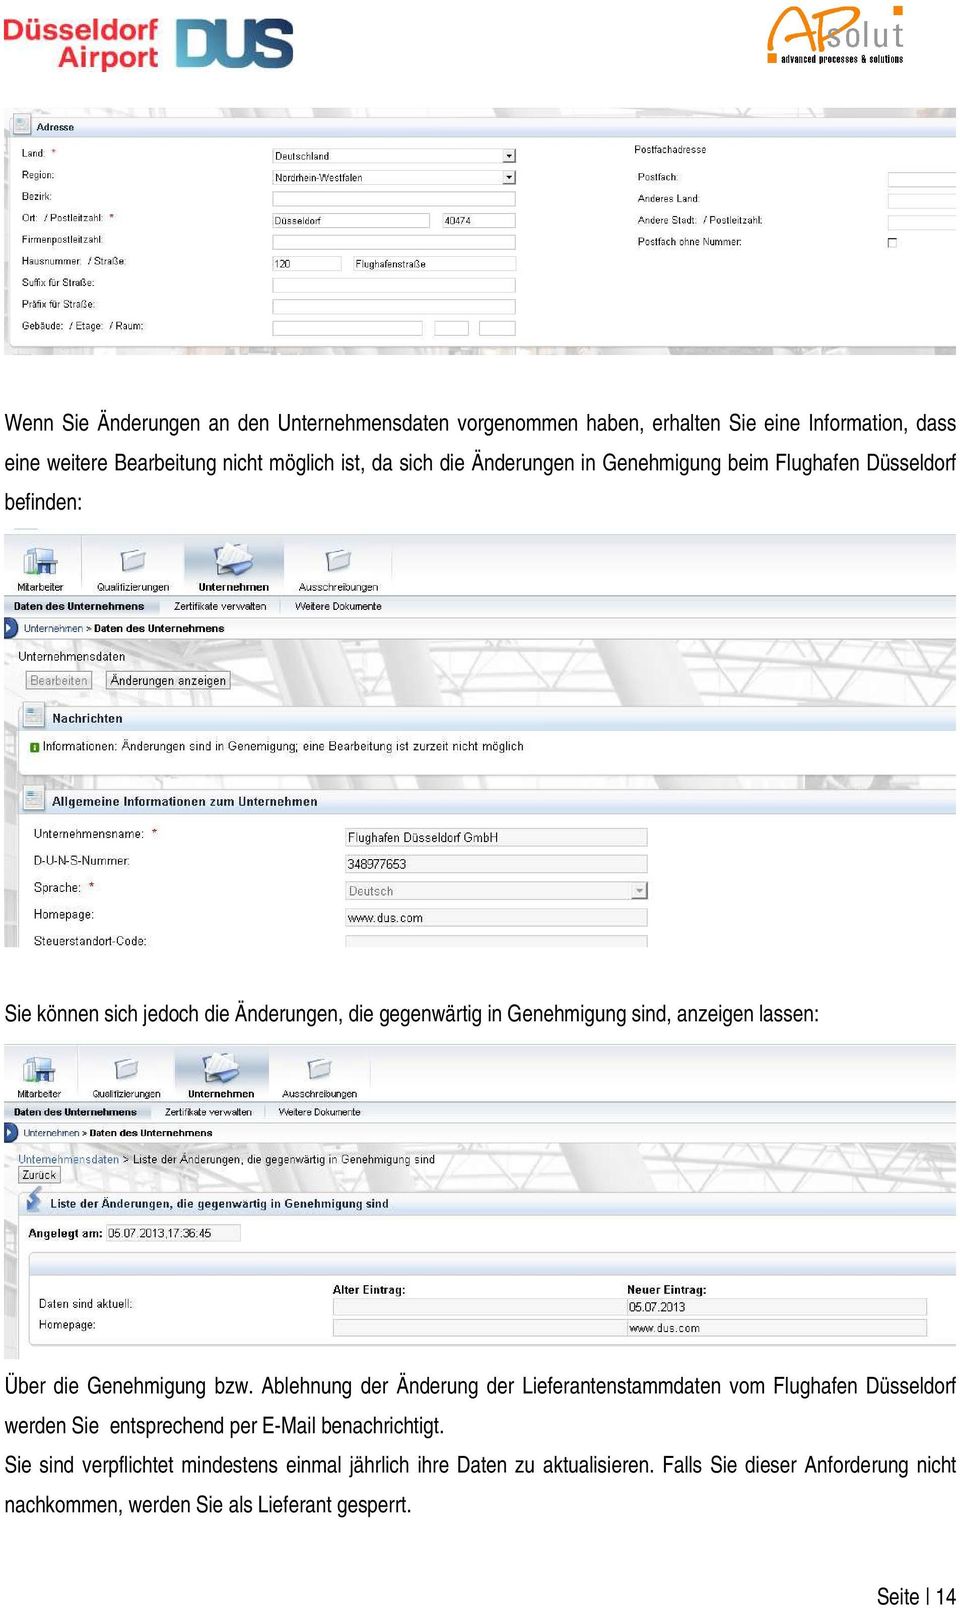 Über die Genehmigung bzw. Ablehnung der Änderung der Lieferantenstammdaten vom Flughafen Düsseldorf werden Sie entsprechend per E-Mail benachrichtigt.